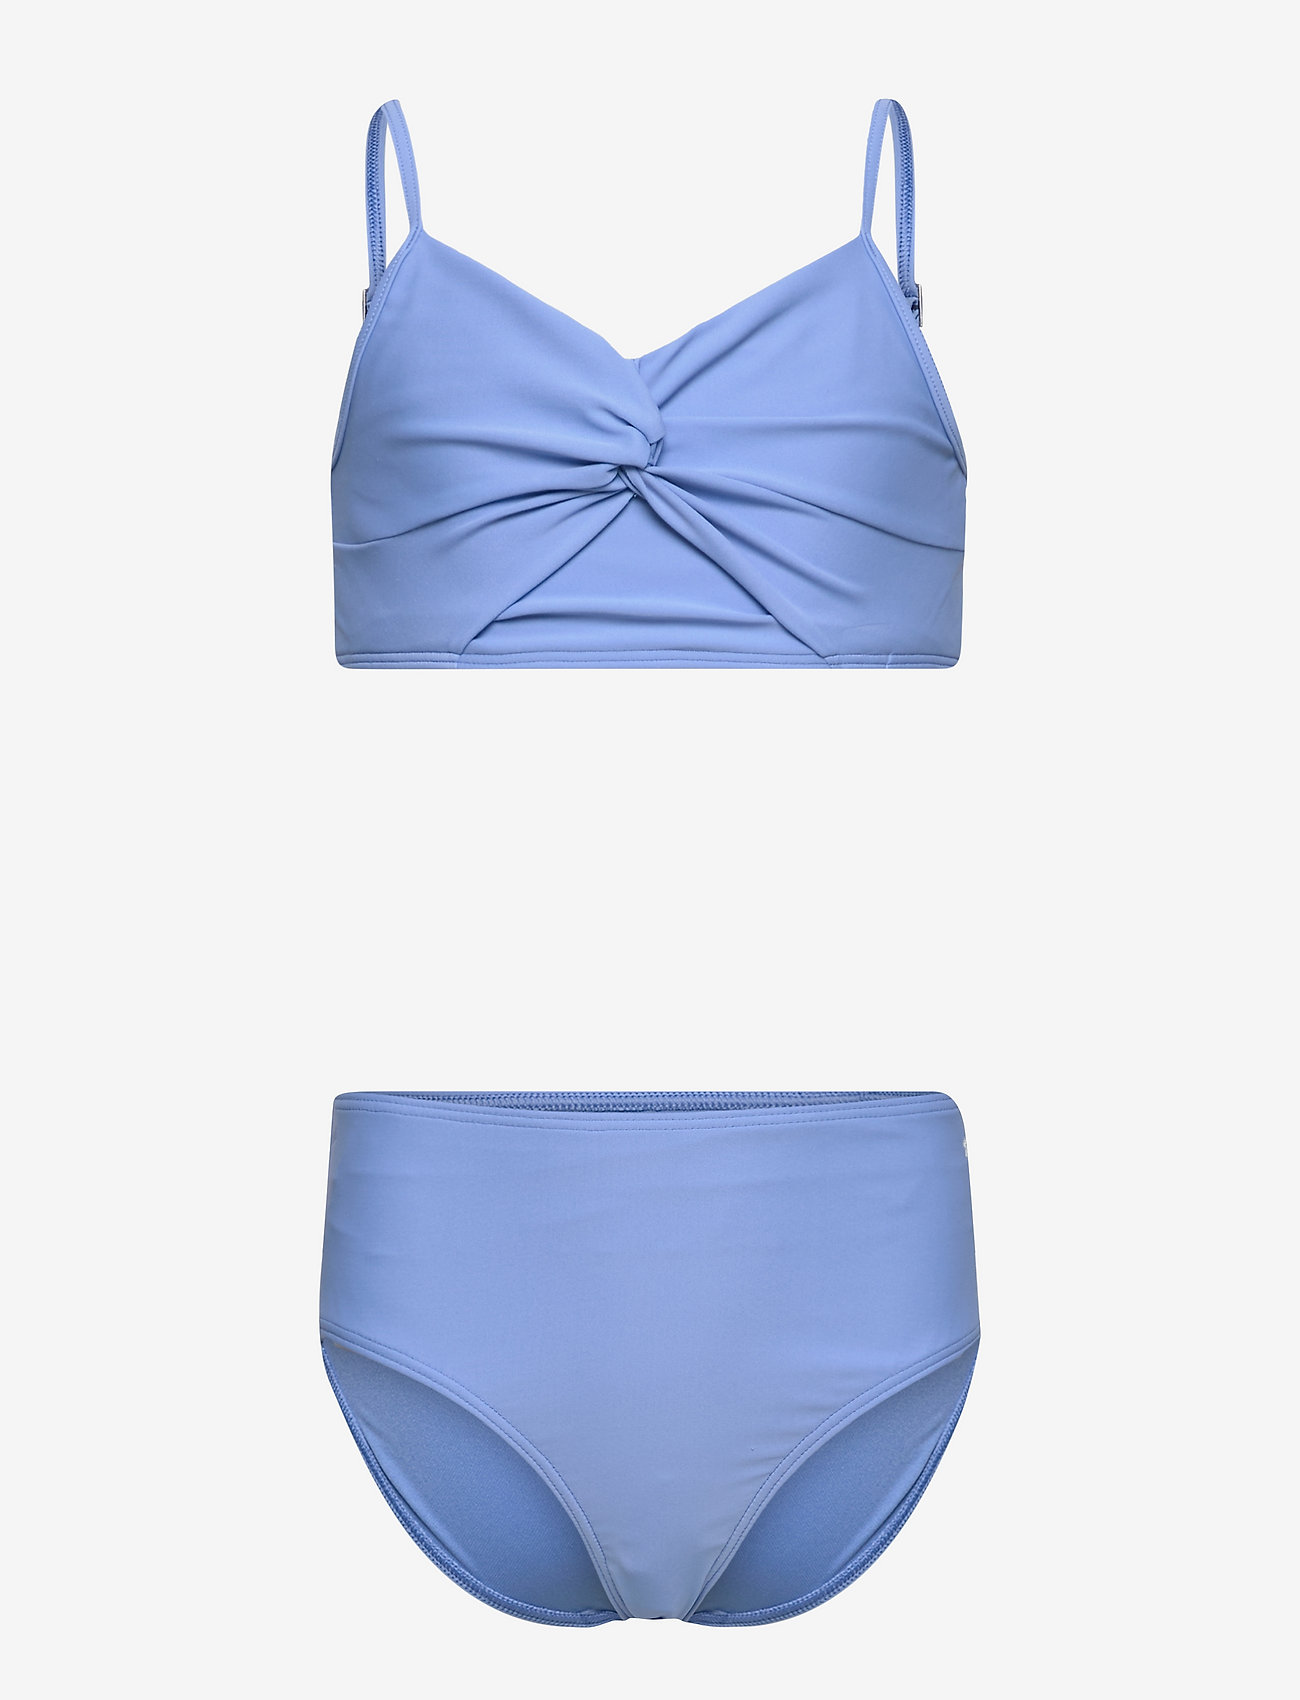 Abercrombie & Fitch Kids Girls Swim - Bikinis | Boozt.com